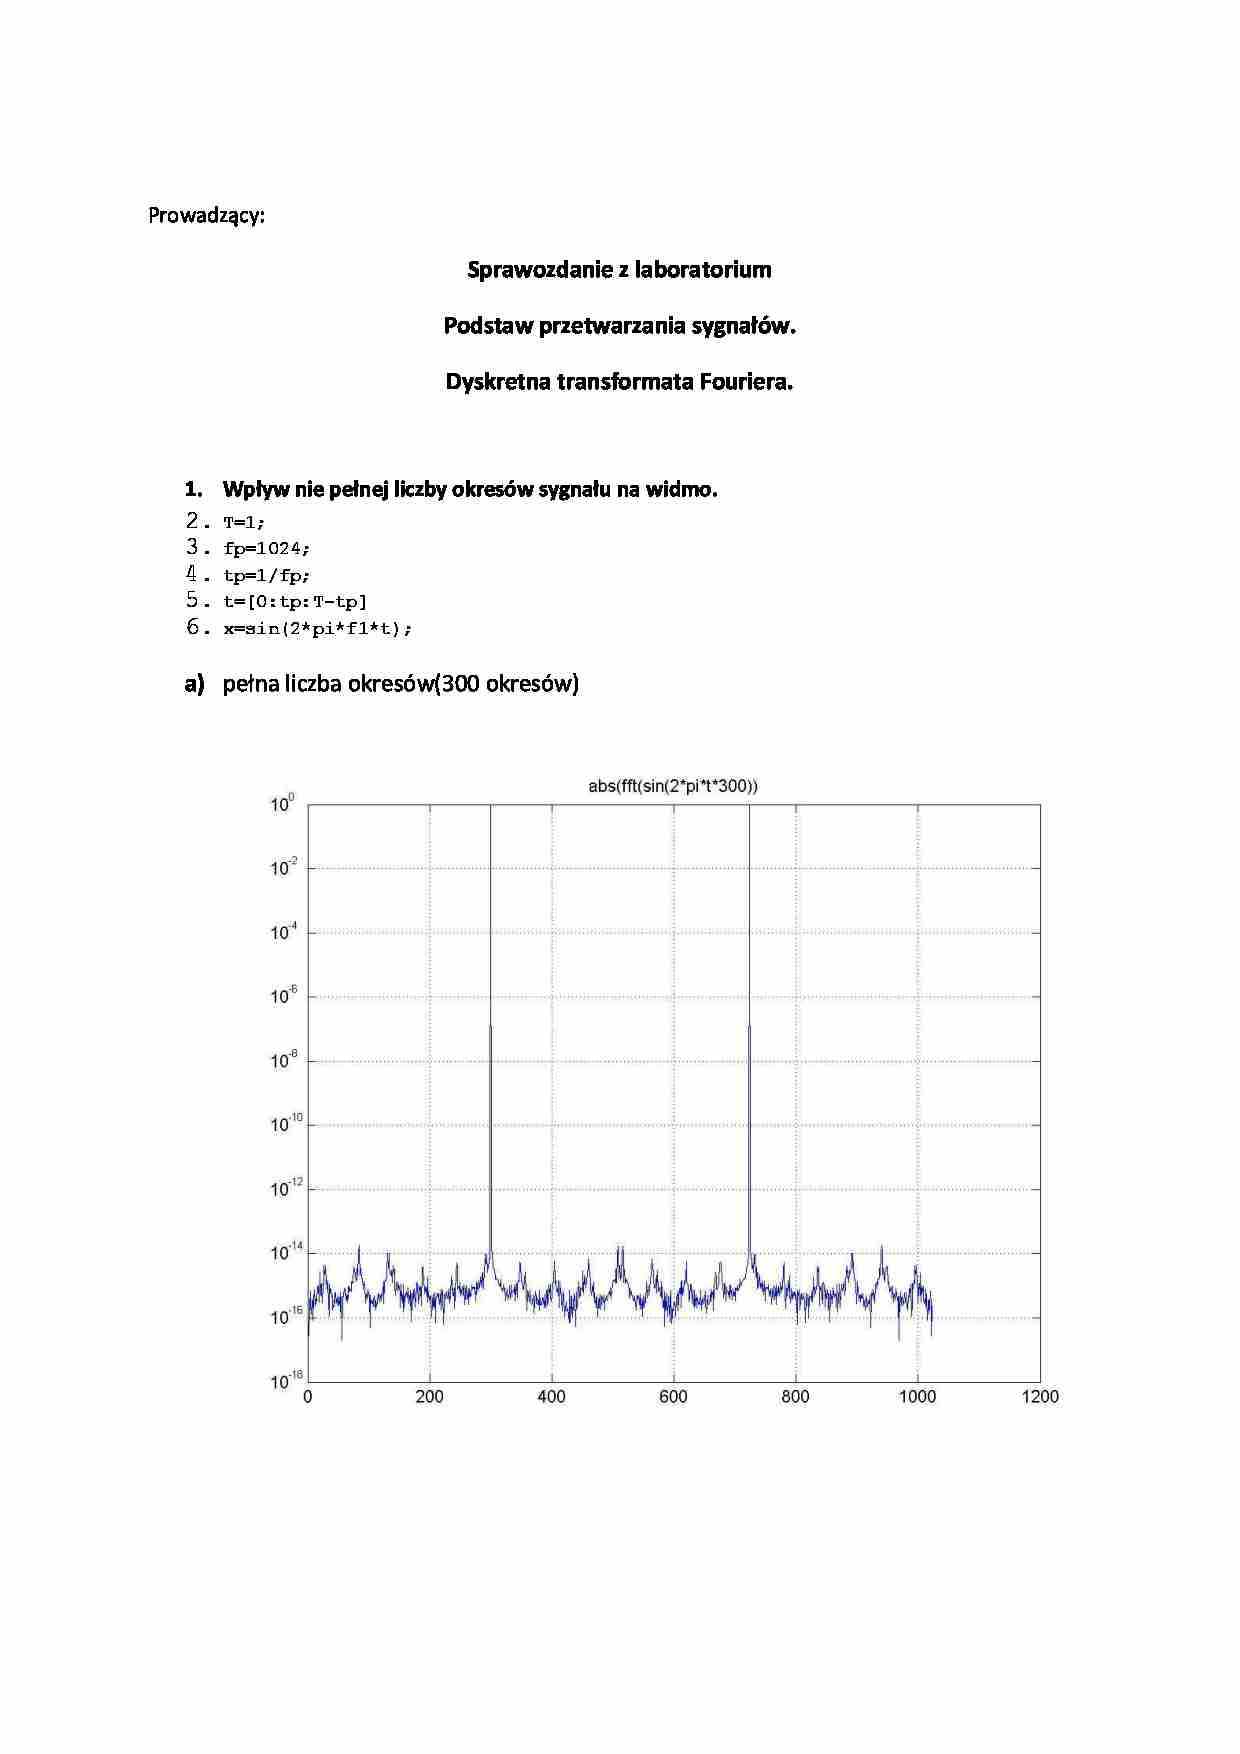 Dyskretna transformata Fouriera-sprawozdanie - strona 1